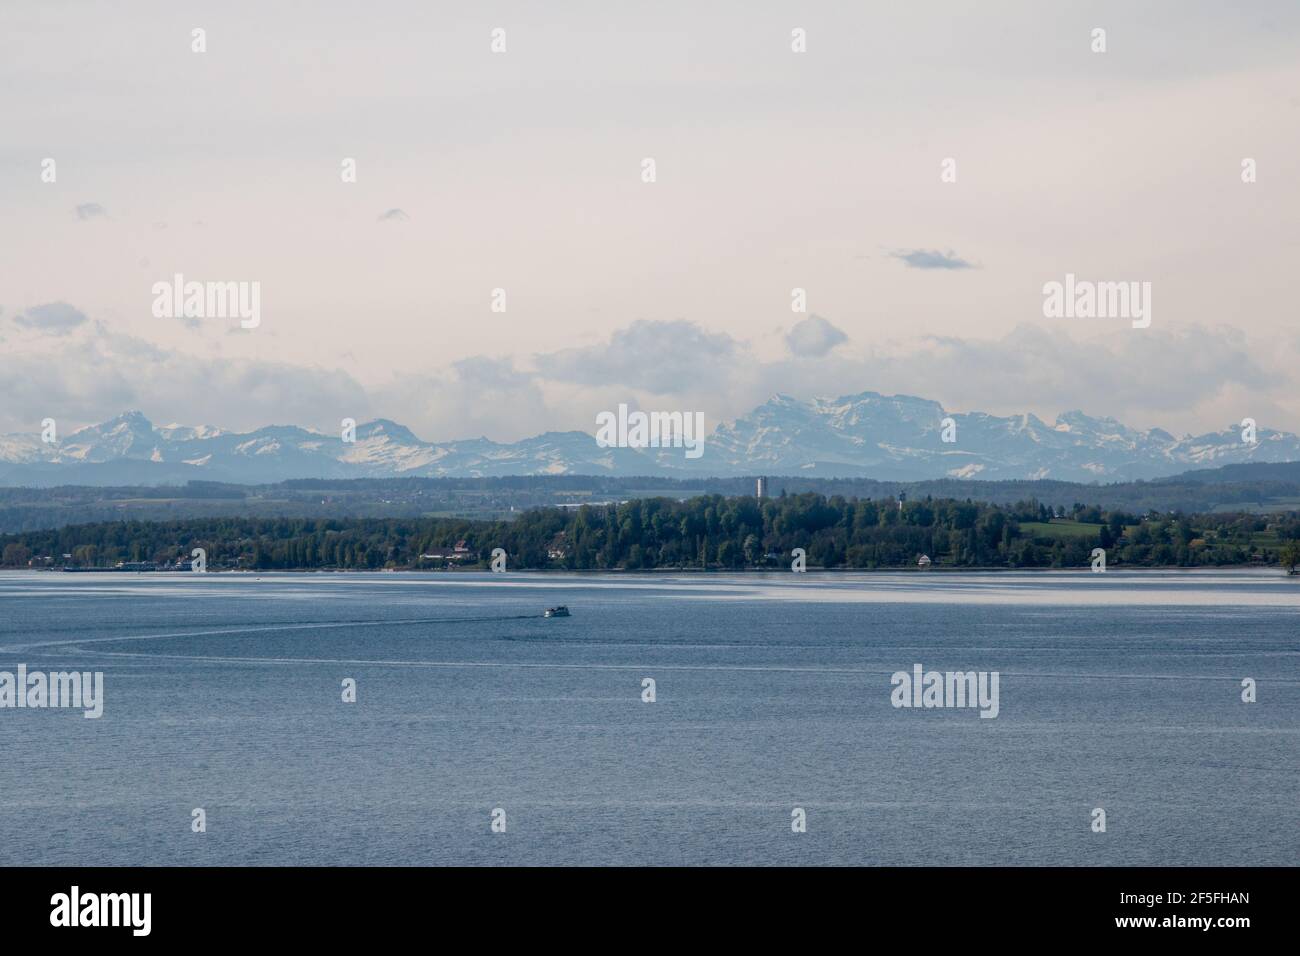 vista sul lago di costanza sulle alpi svizzere con isola e navi Foto Stock